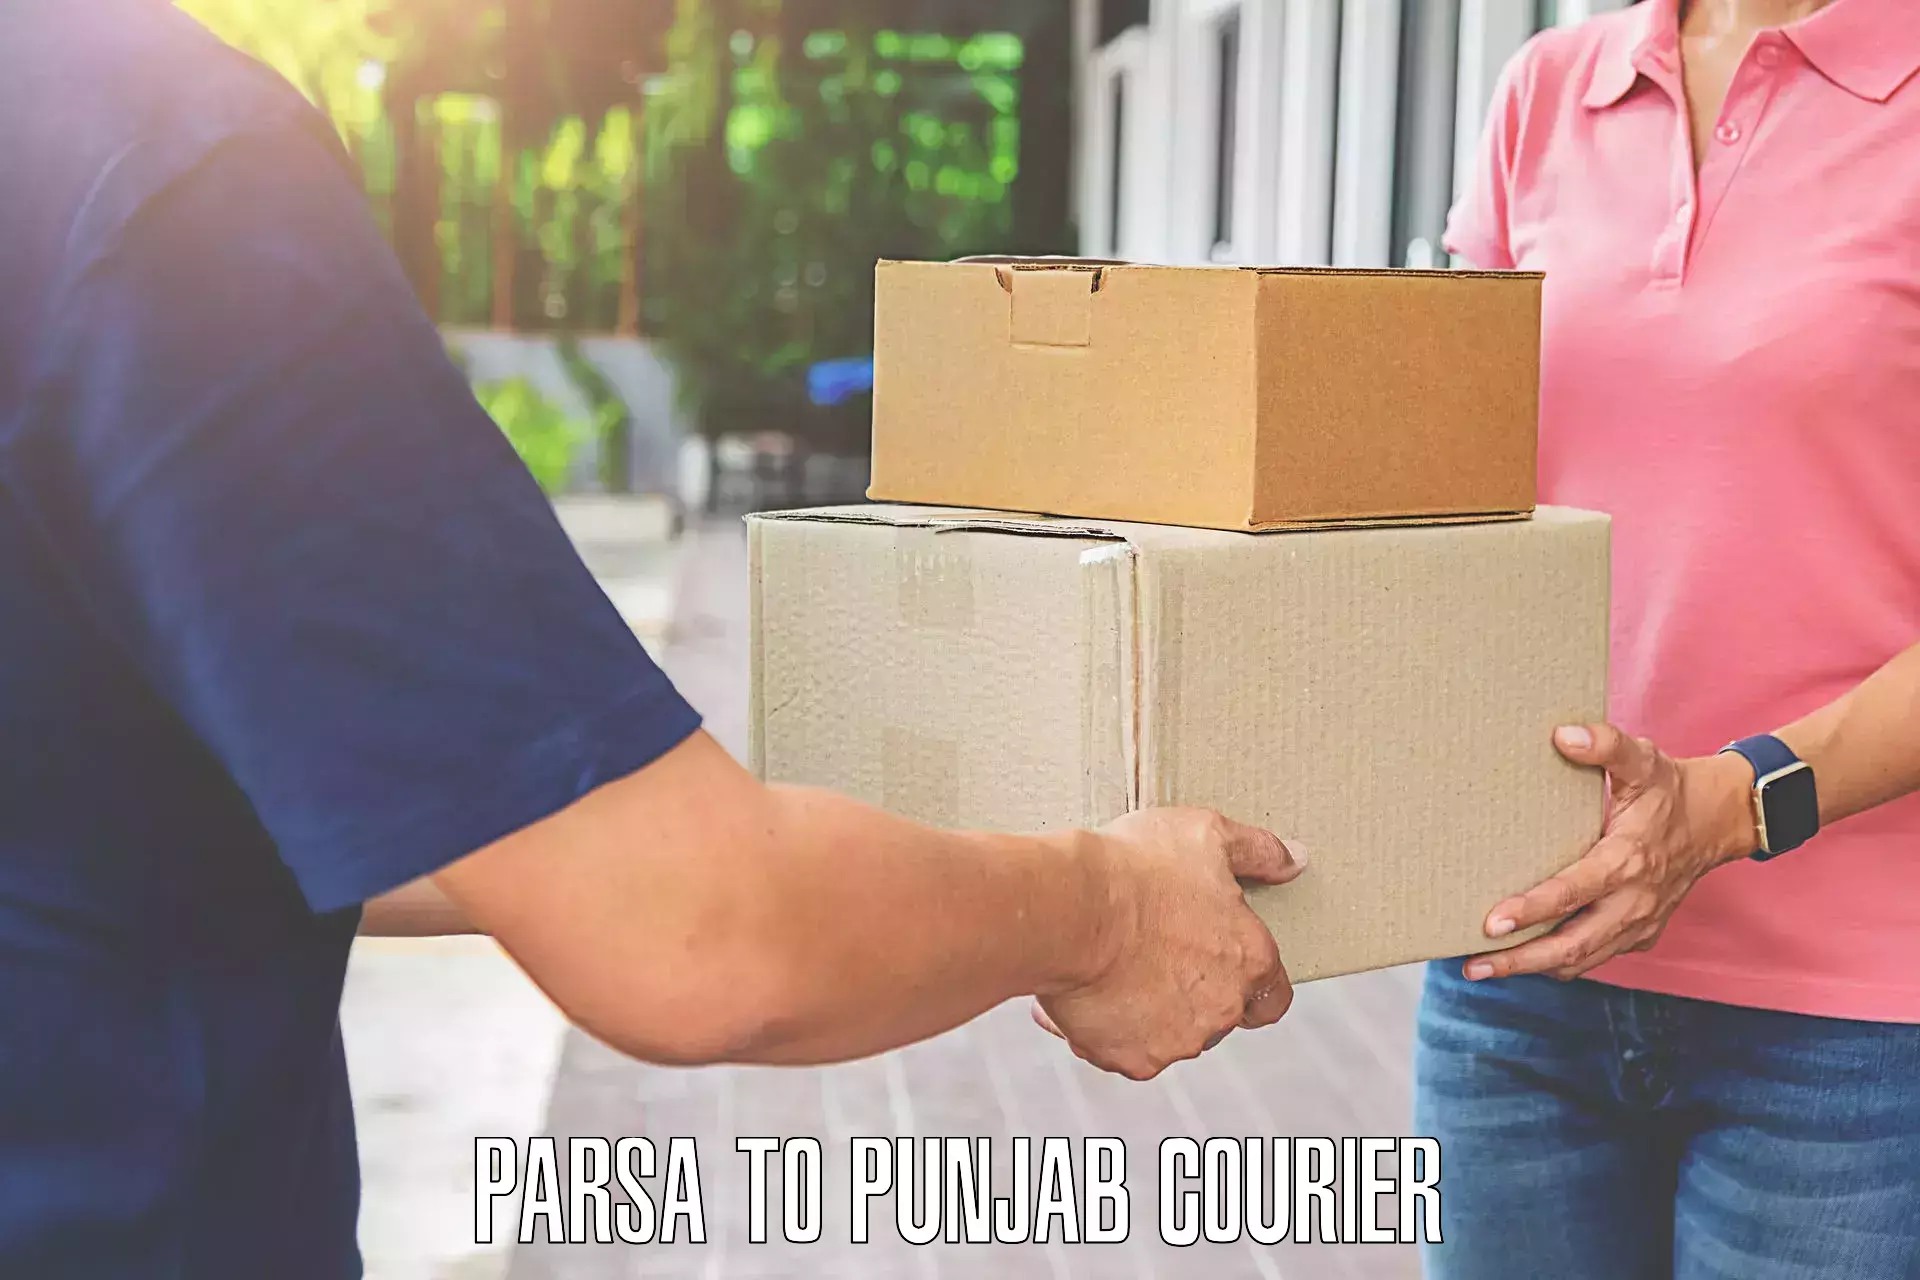 Same day luggage service Parsa to Punjab